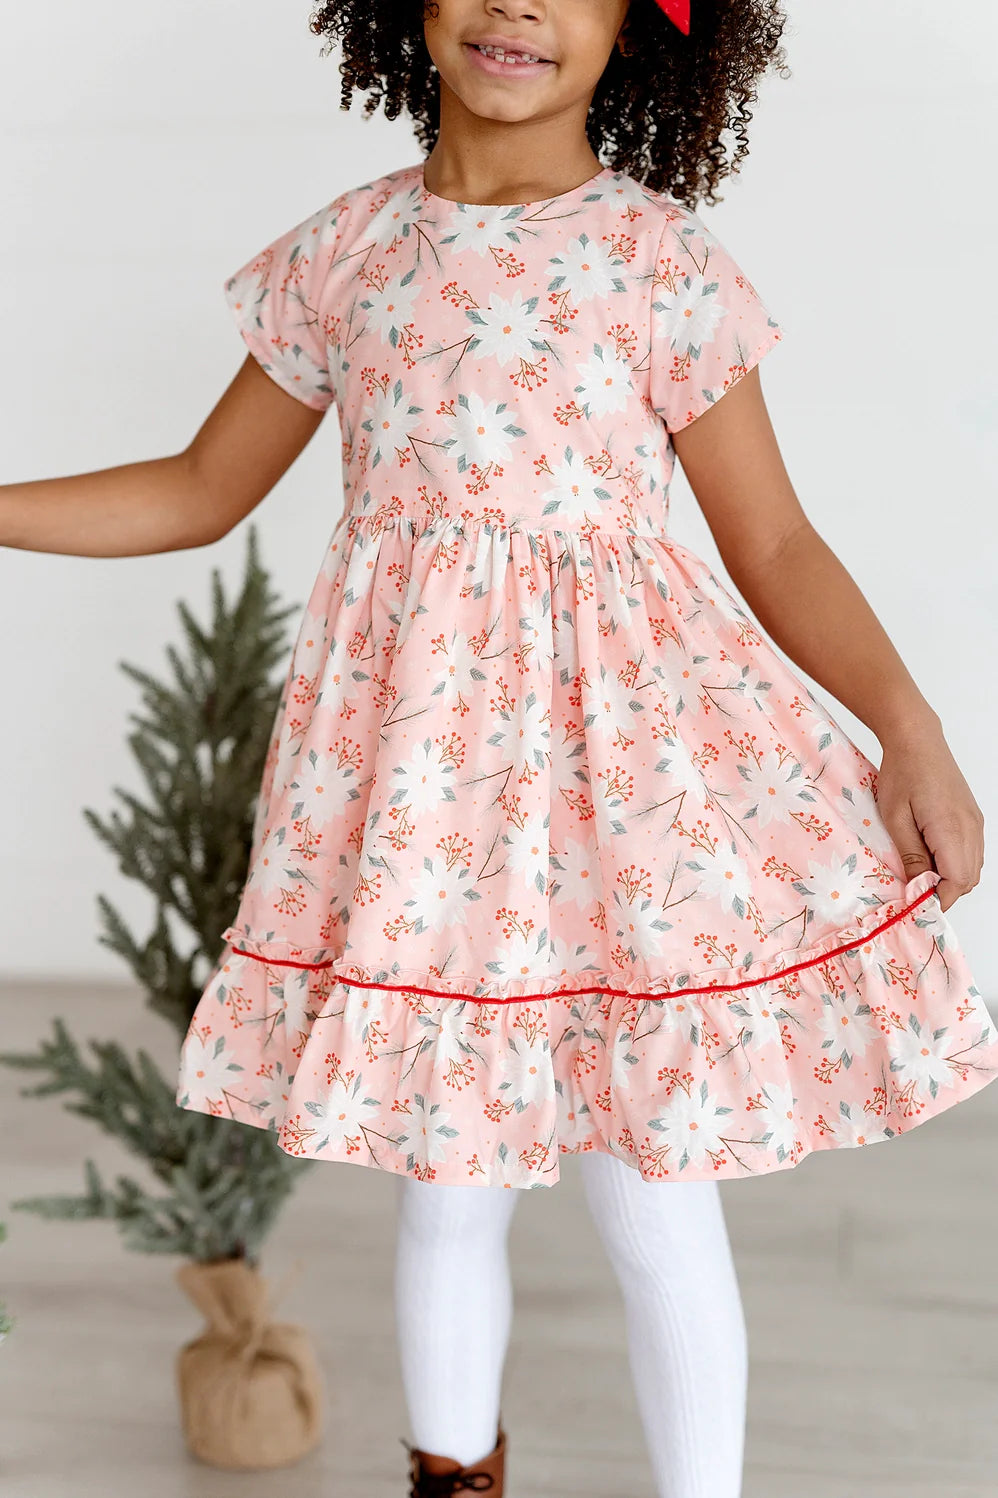 Ollie Jay - Lola Dress in Pink Poinsettia | Poplin Cotton Dress